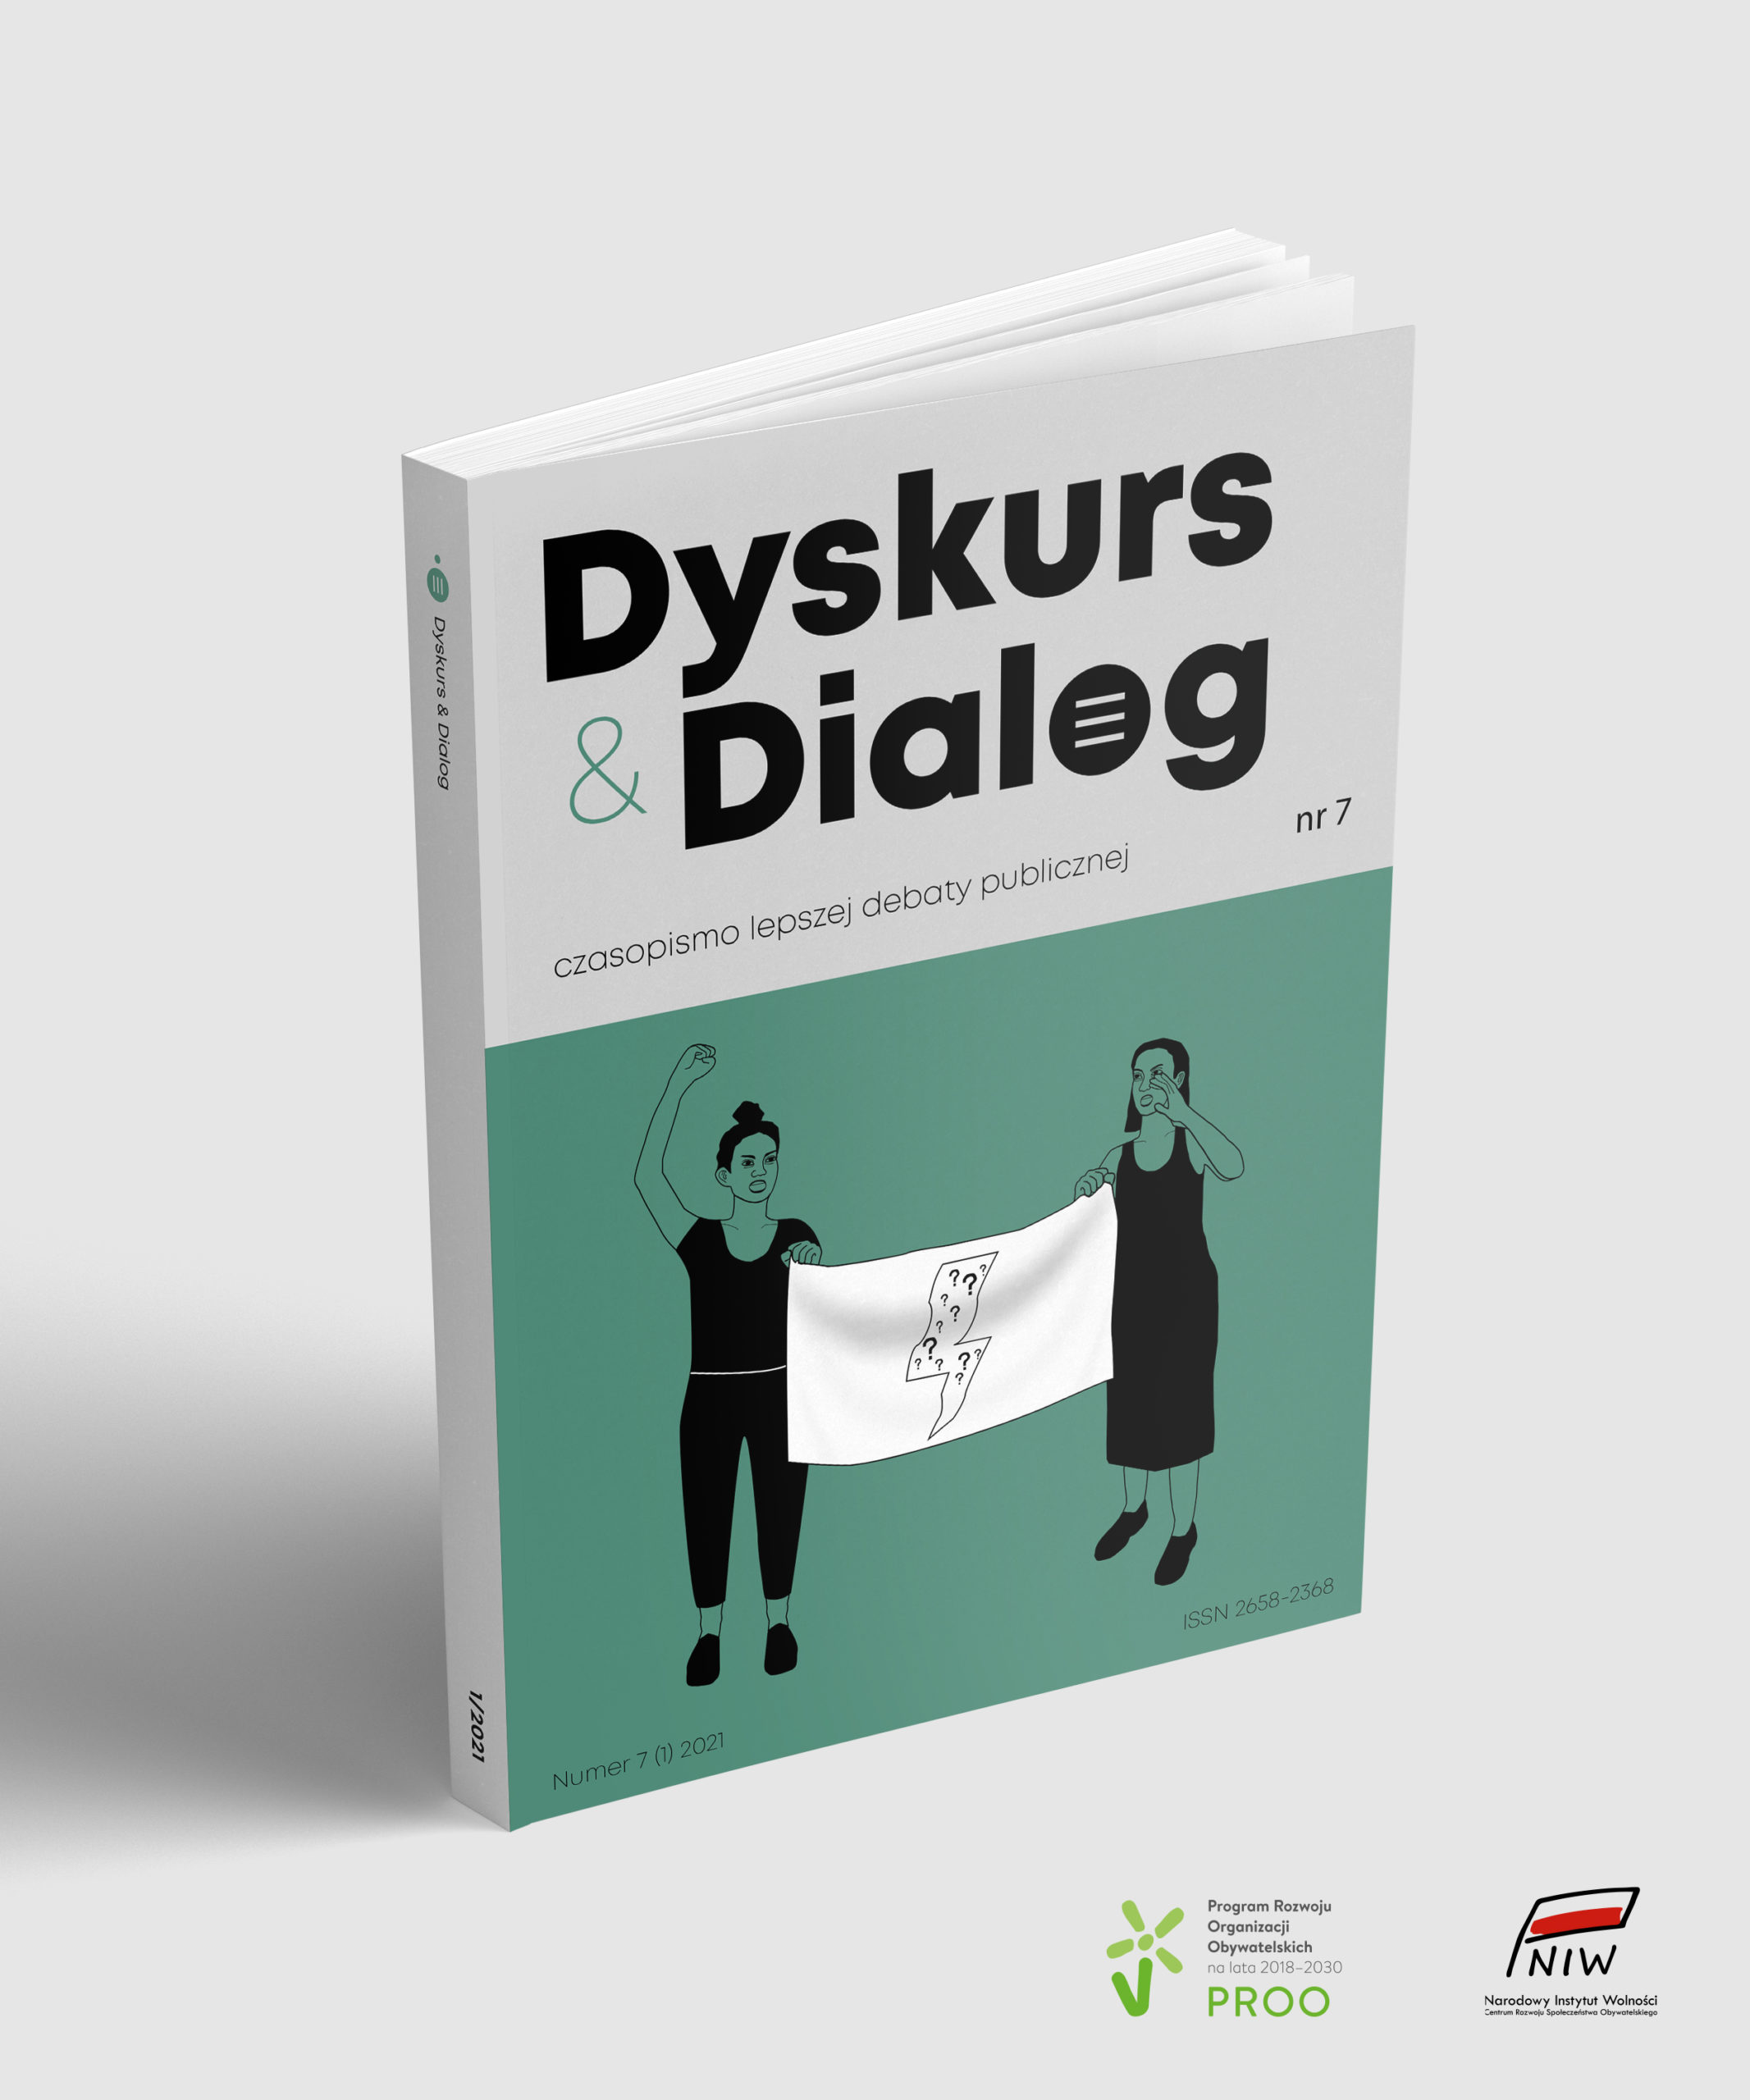 Discourse & Dialogue Cover Image